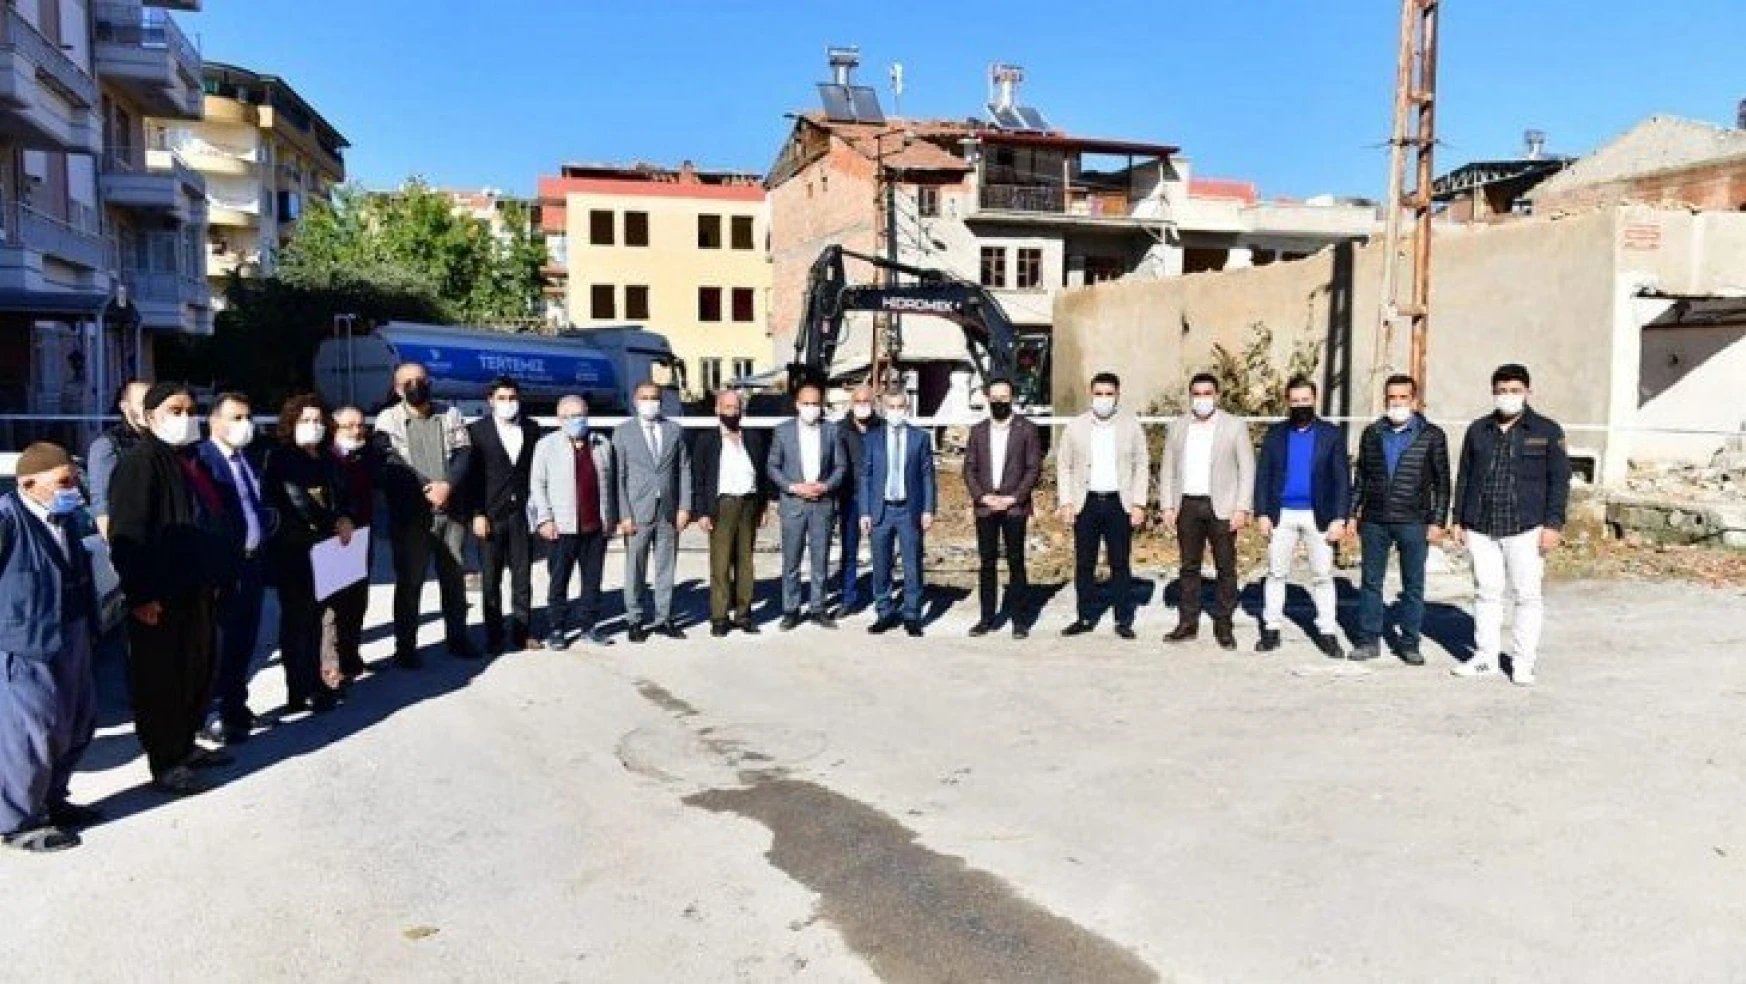 Yeşilyurt Belediyesi, Turgut Özal Mahallesi Kentsel Dönüşüm Projesine Başladı